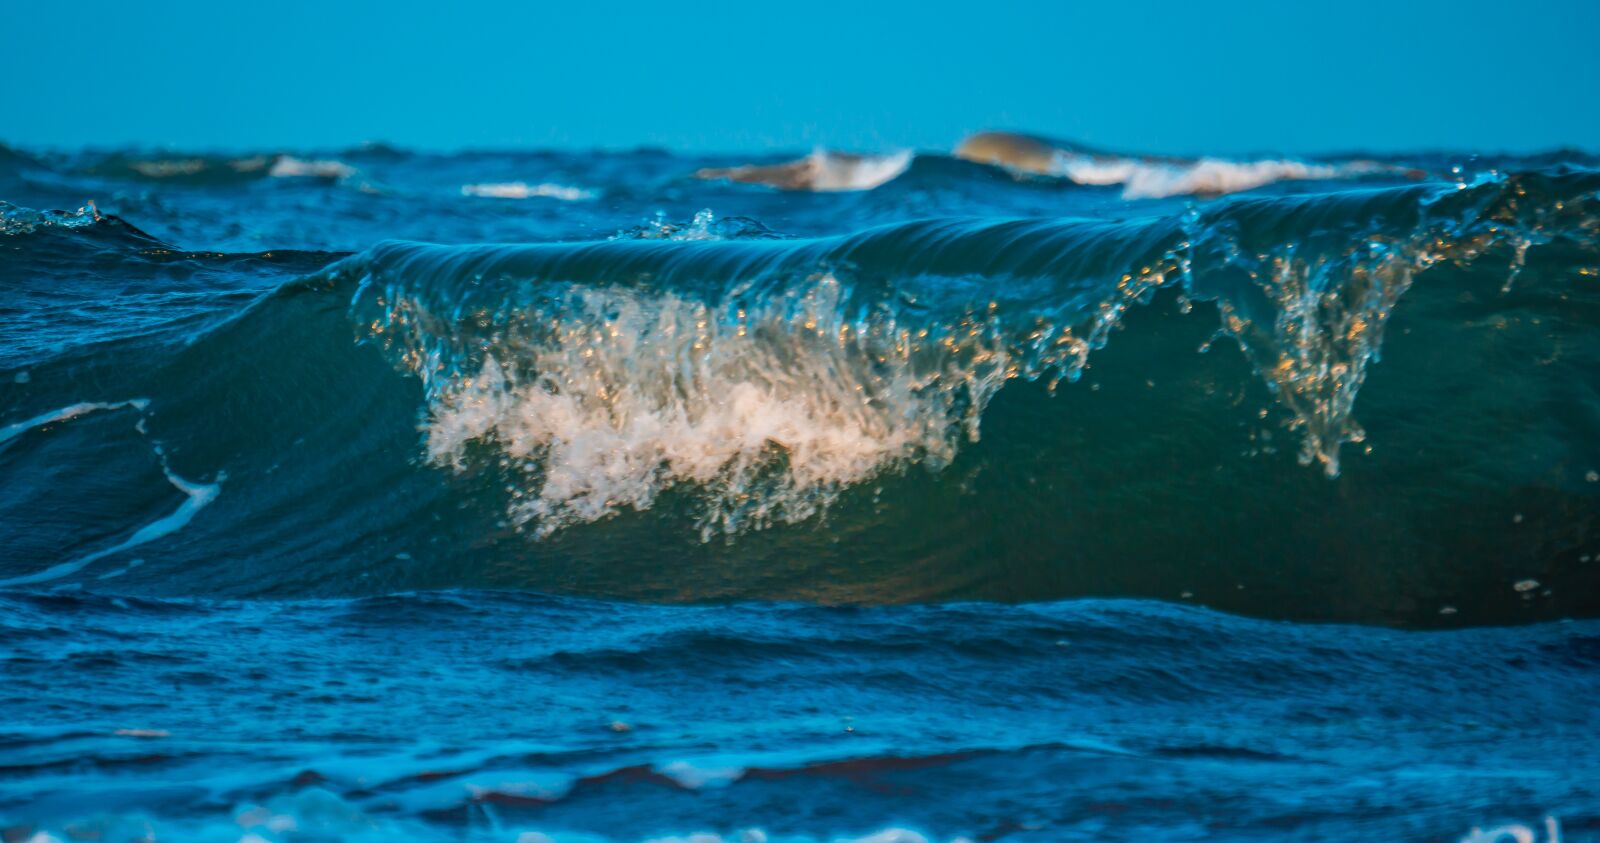 Sony a6400 sample photo. Waves, beach, ocean photography